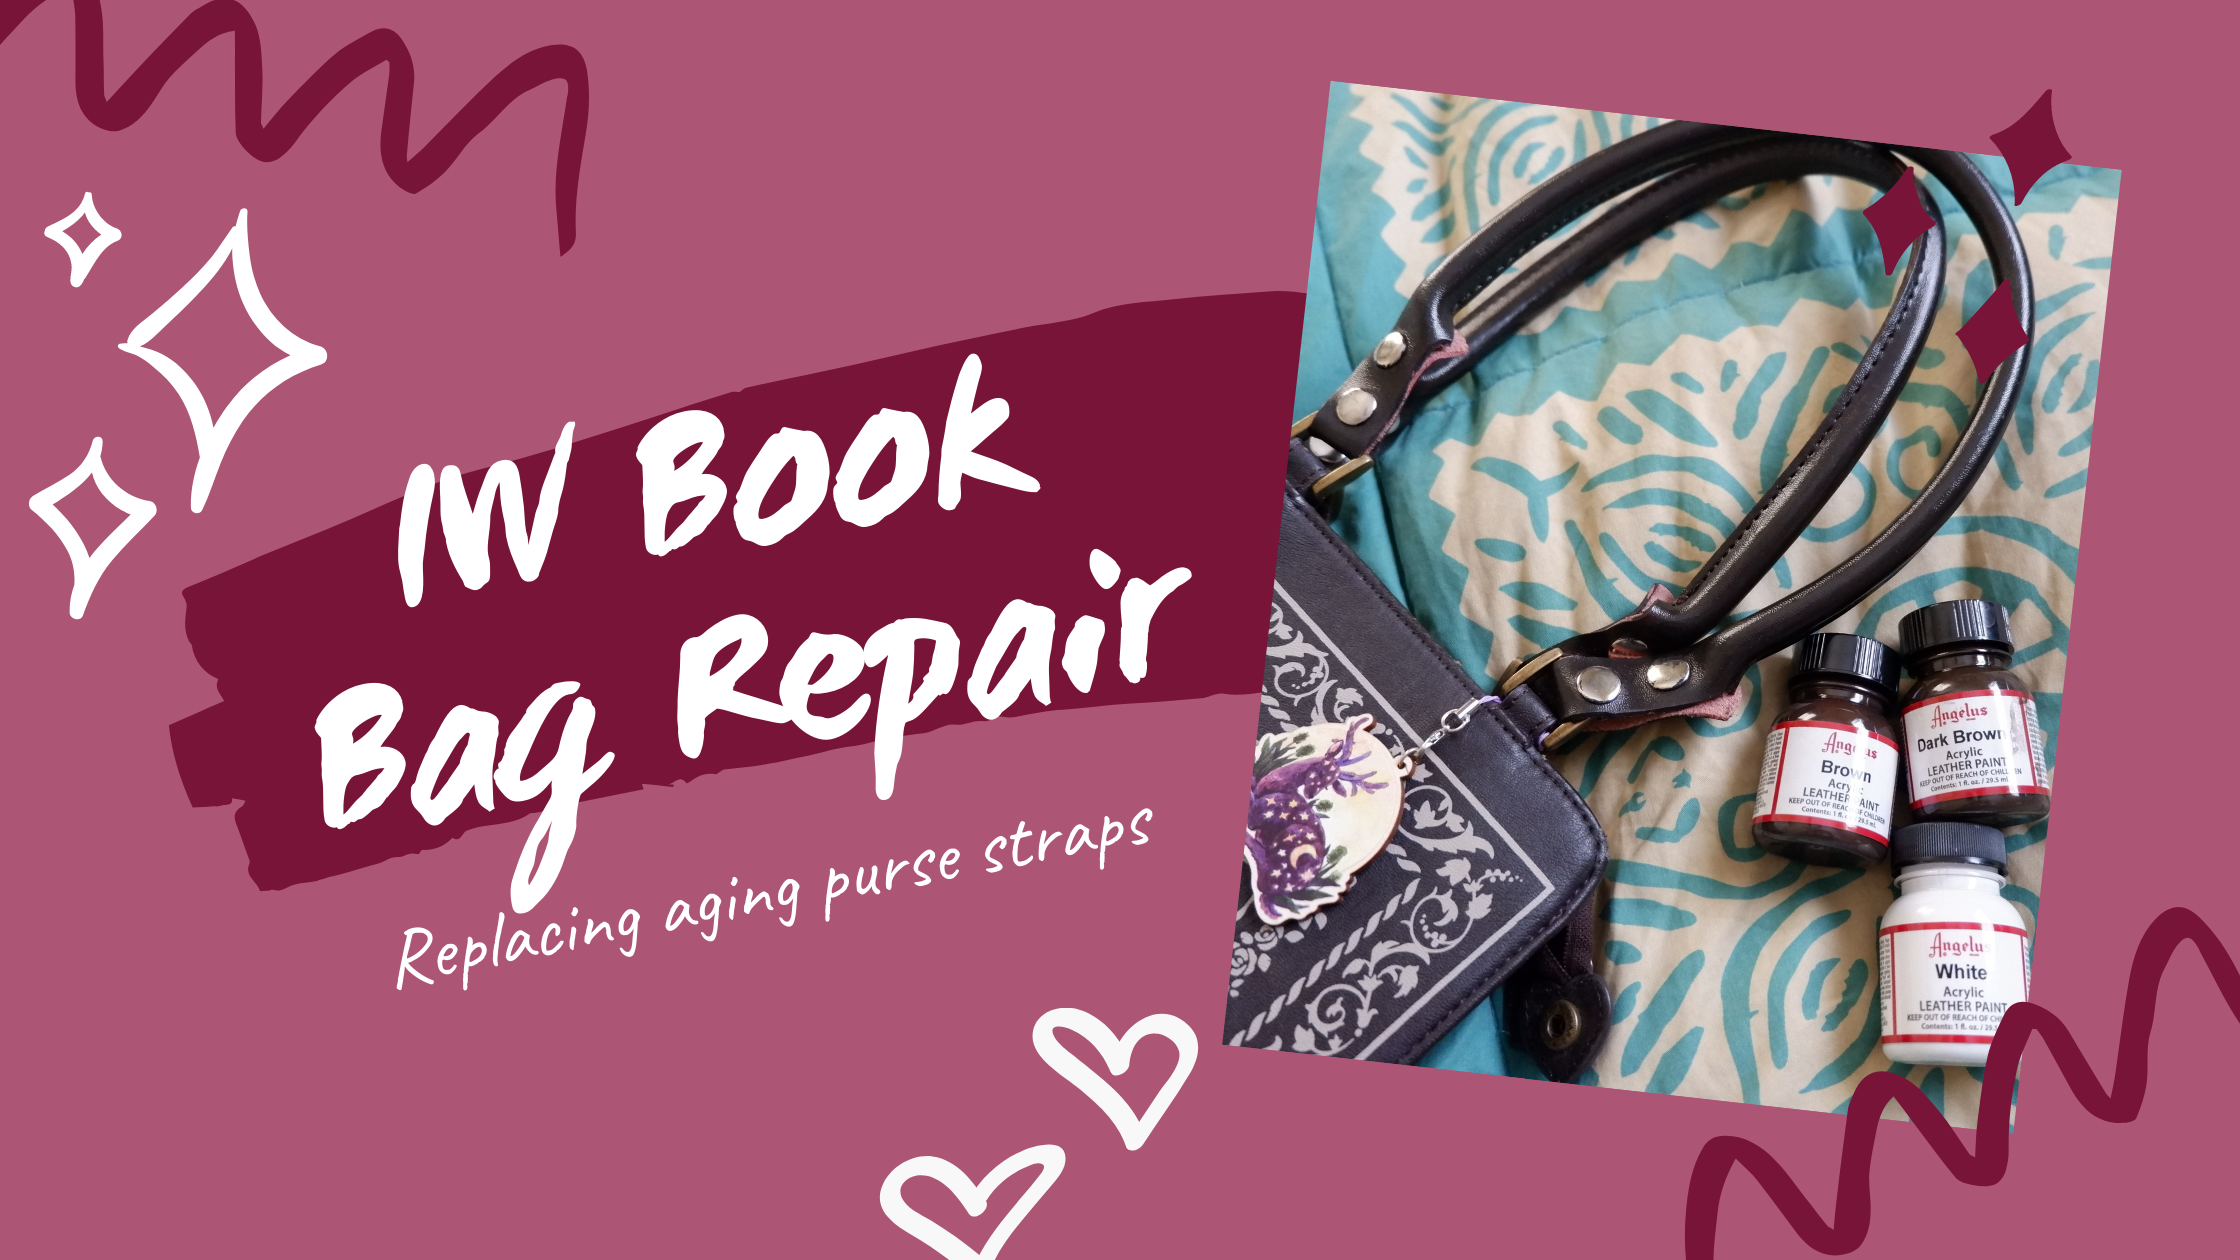 IW Book Bag Repair – Wunderwelt Libre (English)